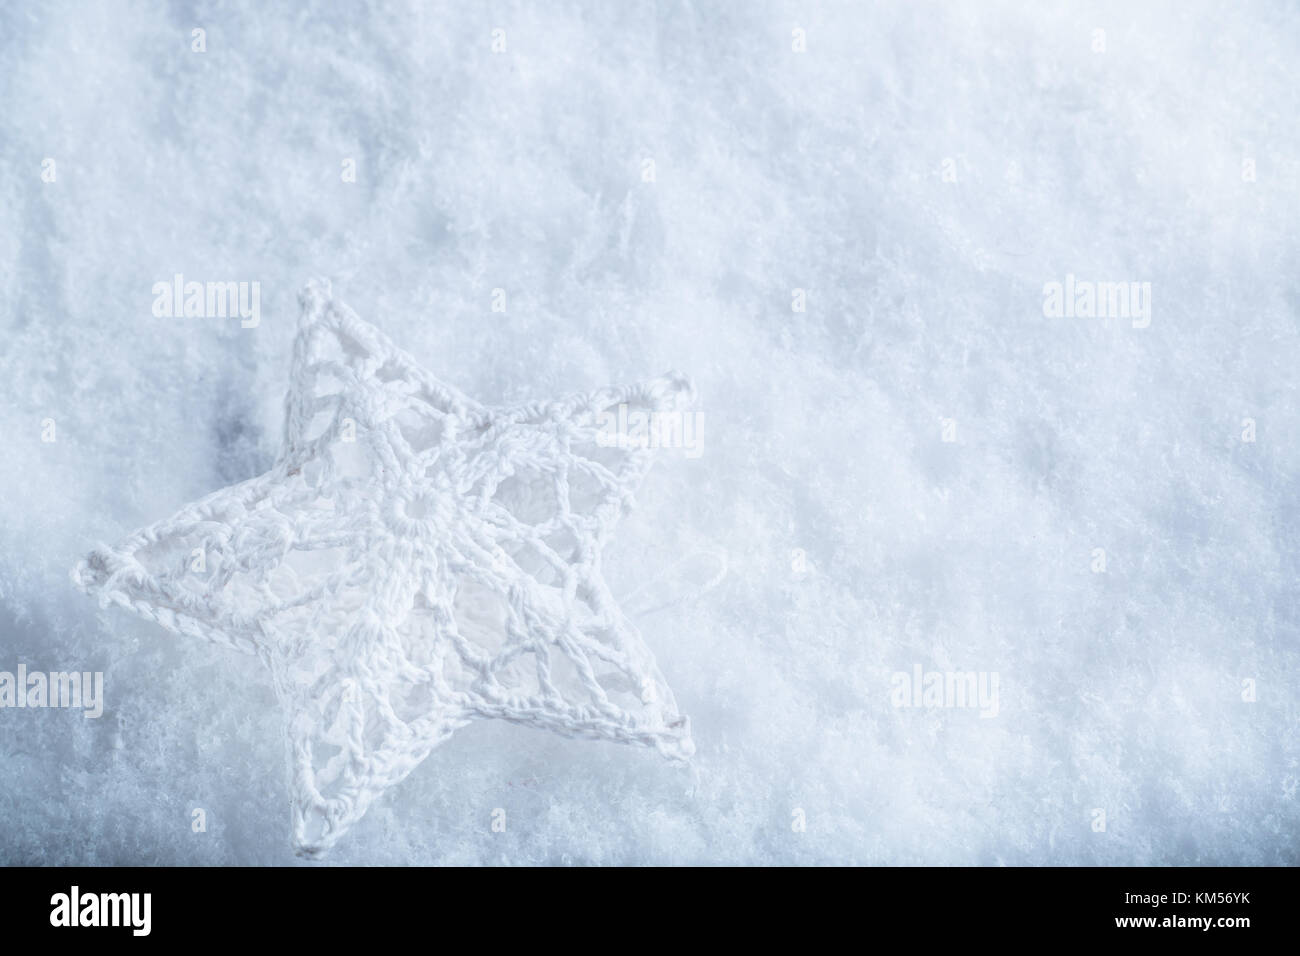 Schöne Sterne auf einem weißen frost Schnee Hintergrund. Winter und  Weihnachten Konzept. instagram Filter Stockfotografie - Alamy